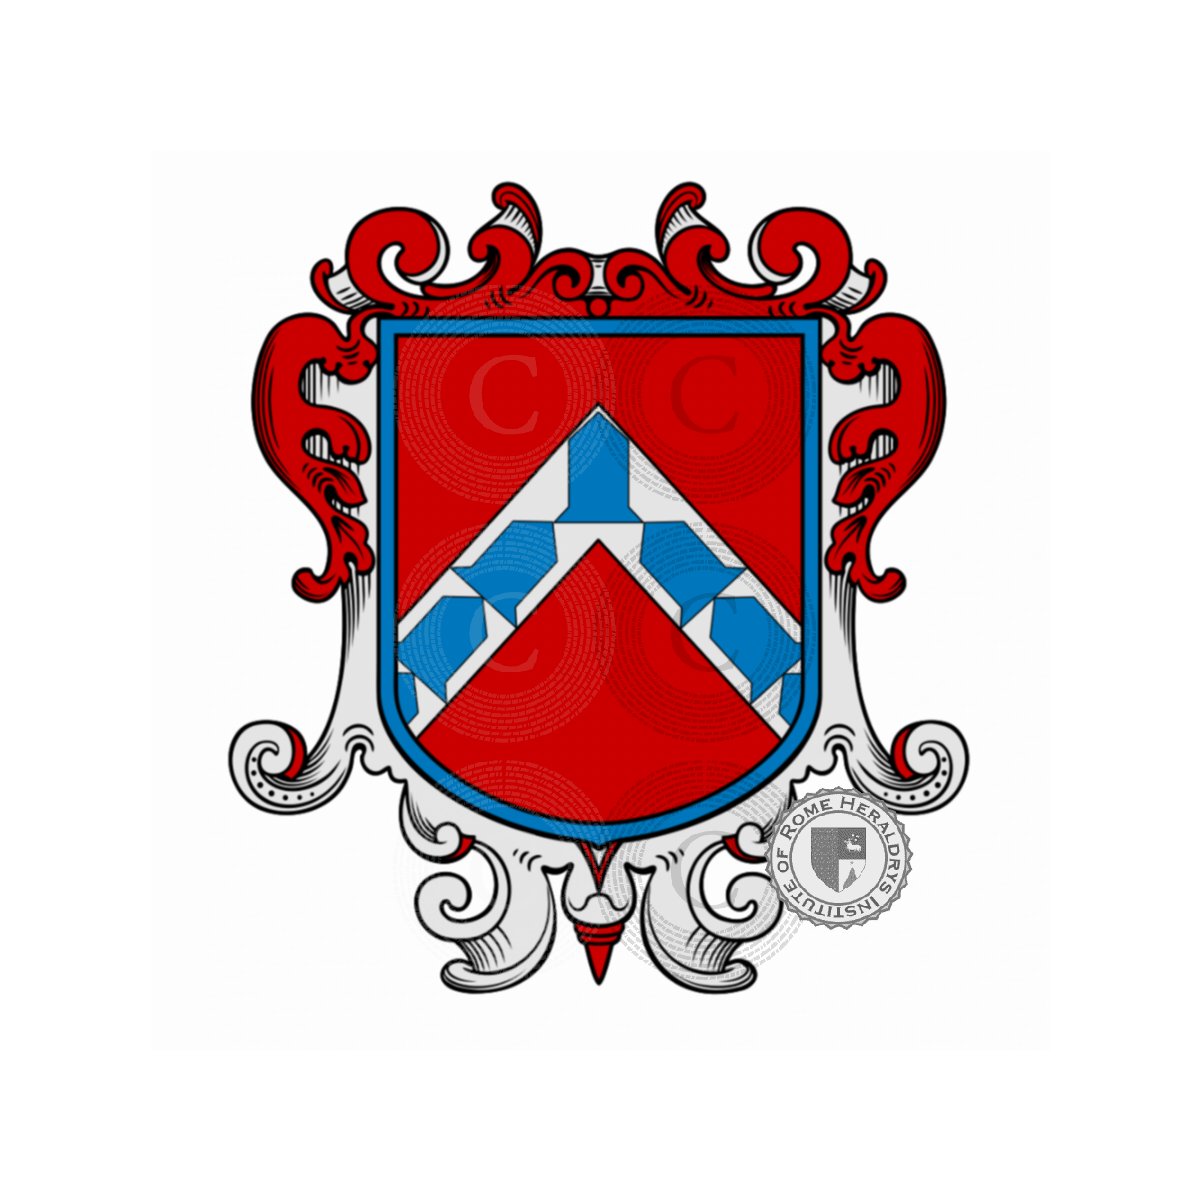 Wappen der FamilieNeroni, Dietisalvo,Nerone,Neroni della Stella